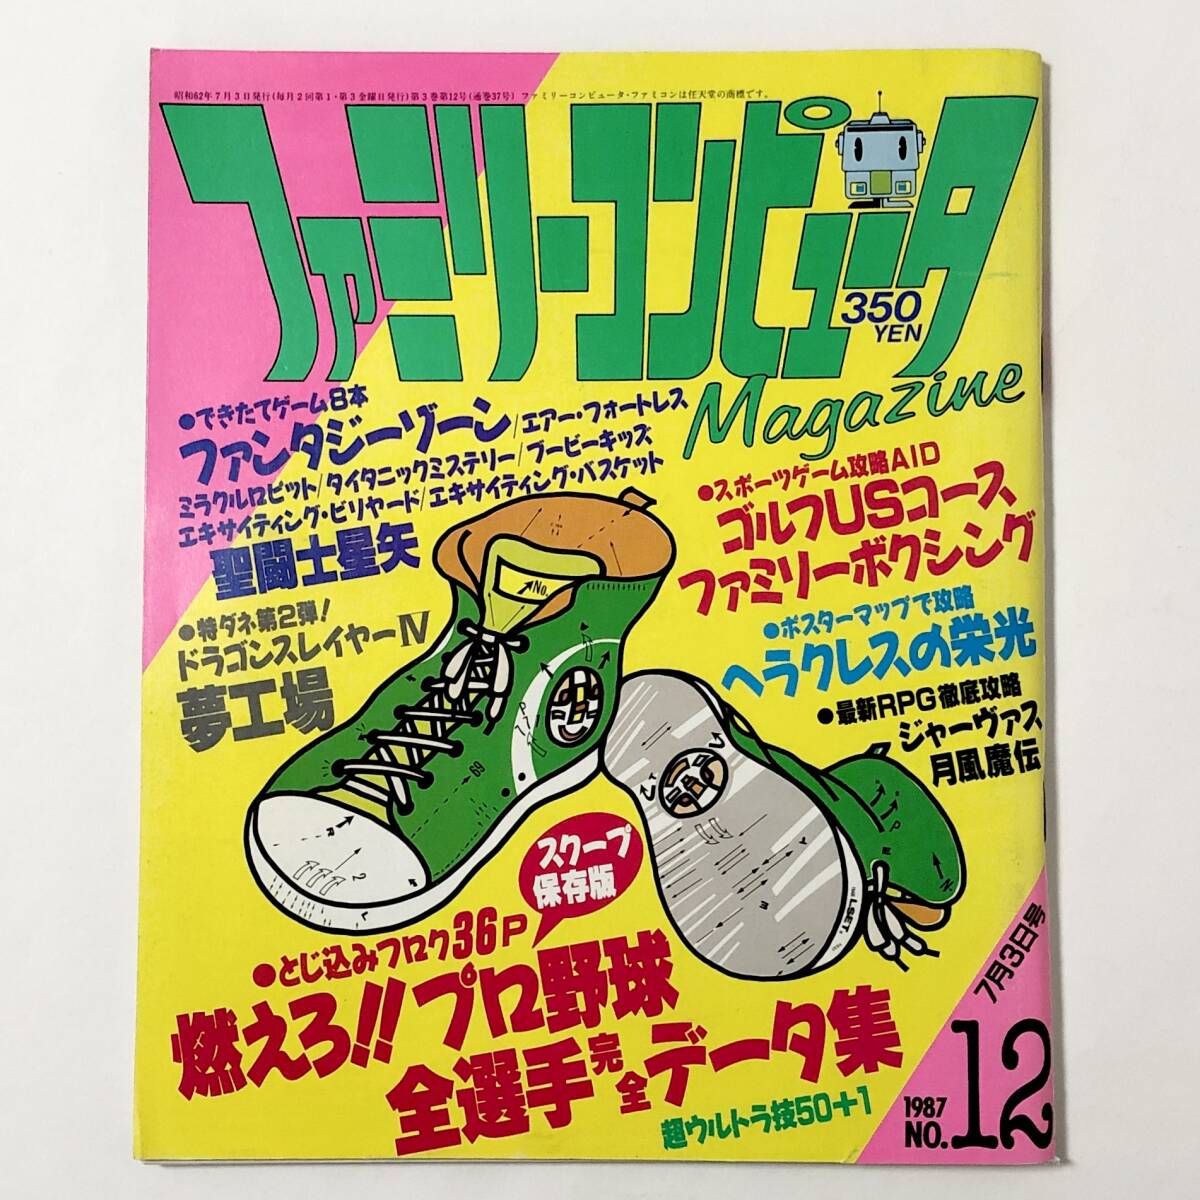 中古雑誌 ファミリーコンピュータマガジン / Family Computer Magazine 1987年 No.12 7月3日号 ヘラクレスの栄光 MAP付き 月風魔伝 攻略_画像1